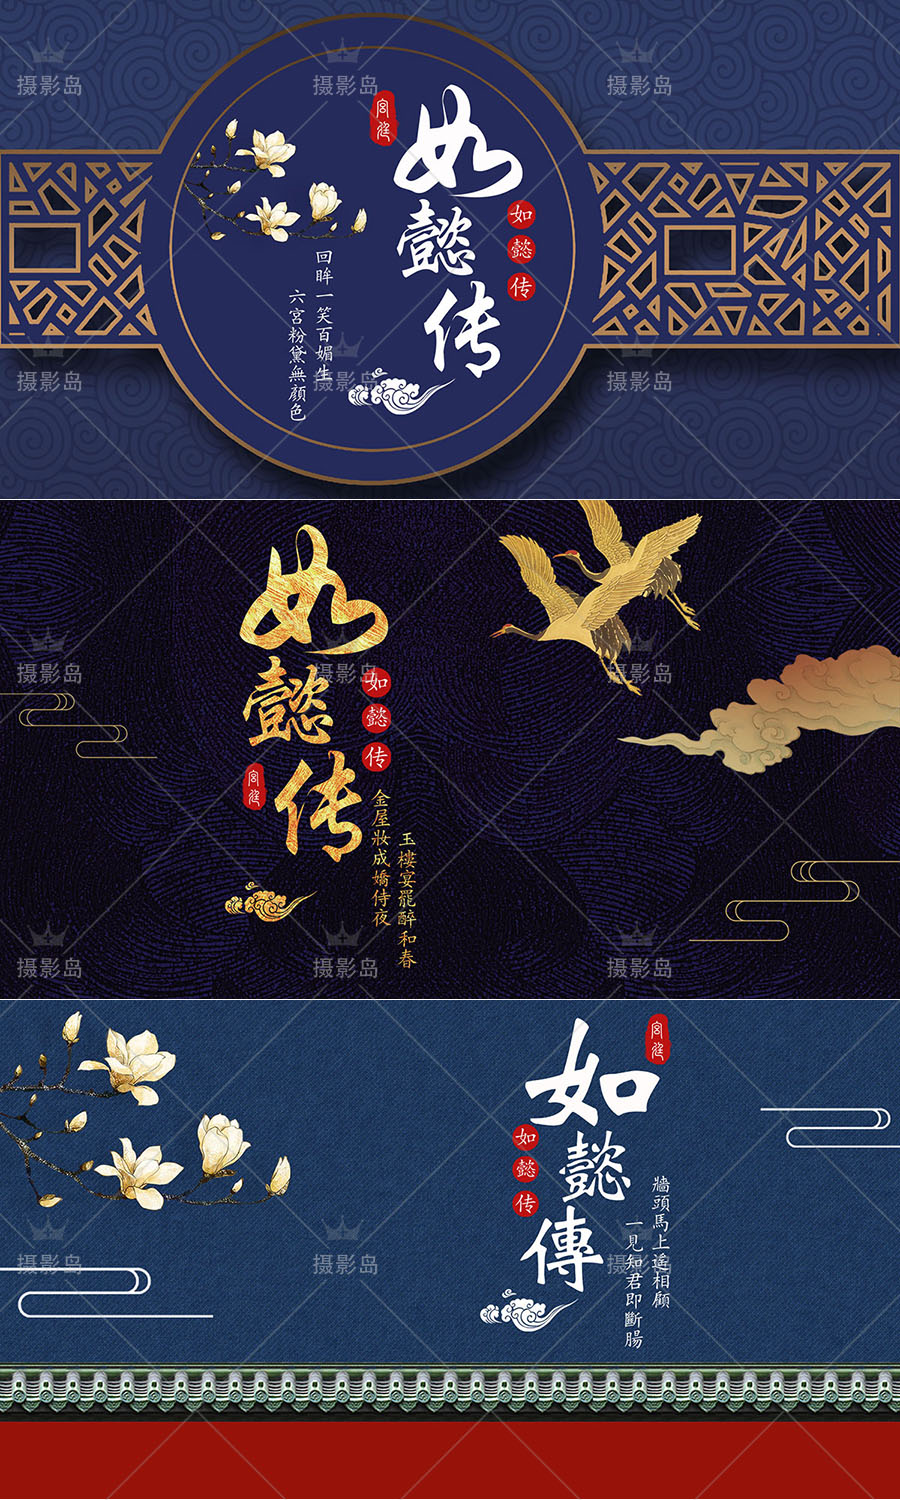 古装宫廷戏如懿传宣传海报图案PS素材模板，中国古代满清朝宫廷psd背景设计图